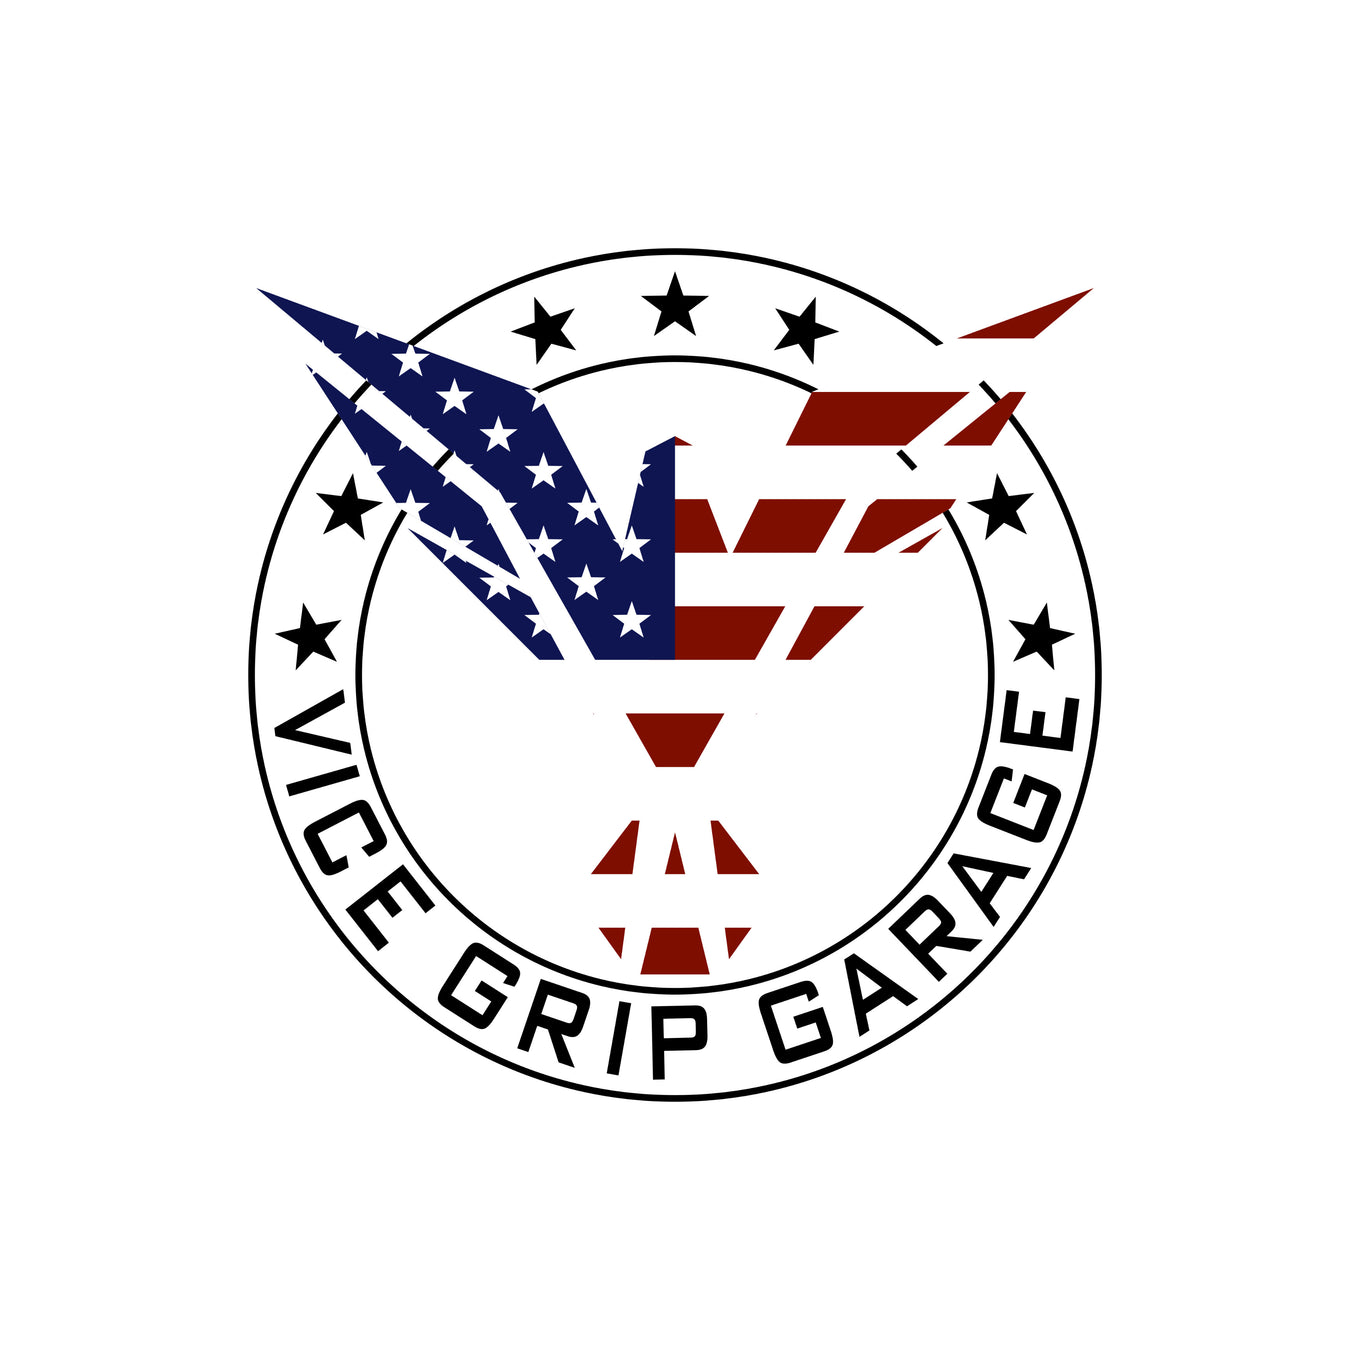 Vice Grip Garage